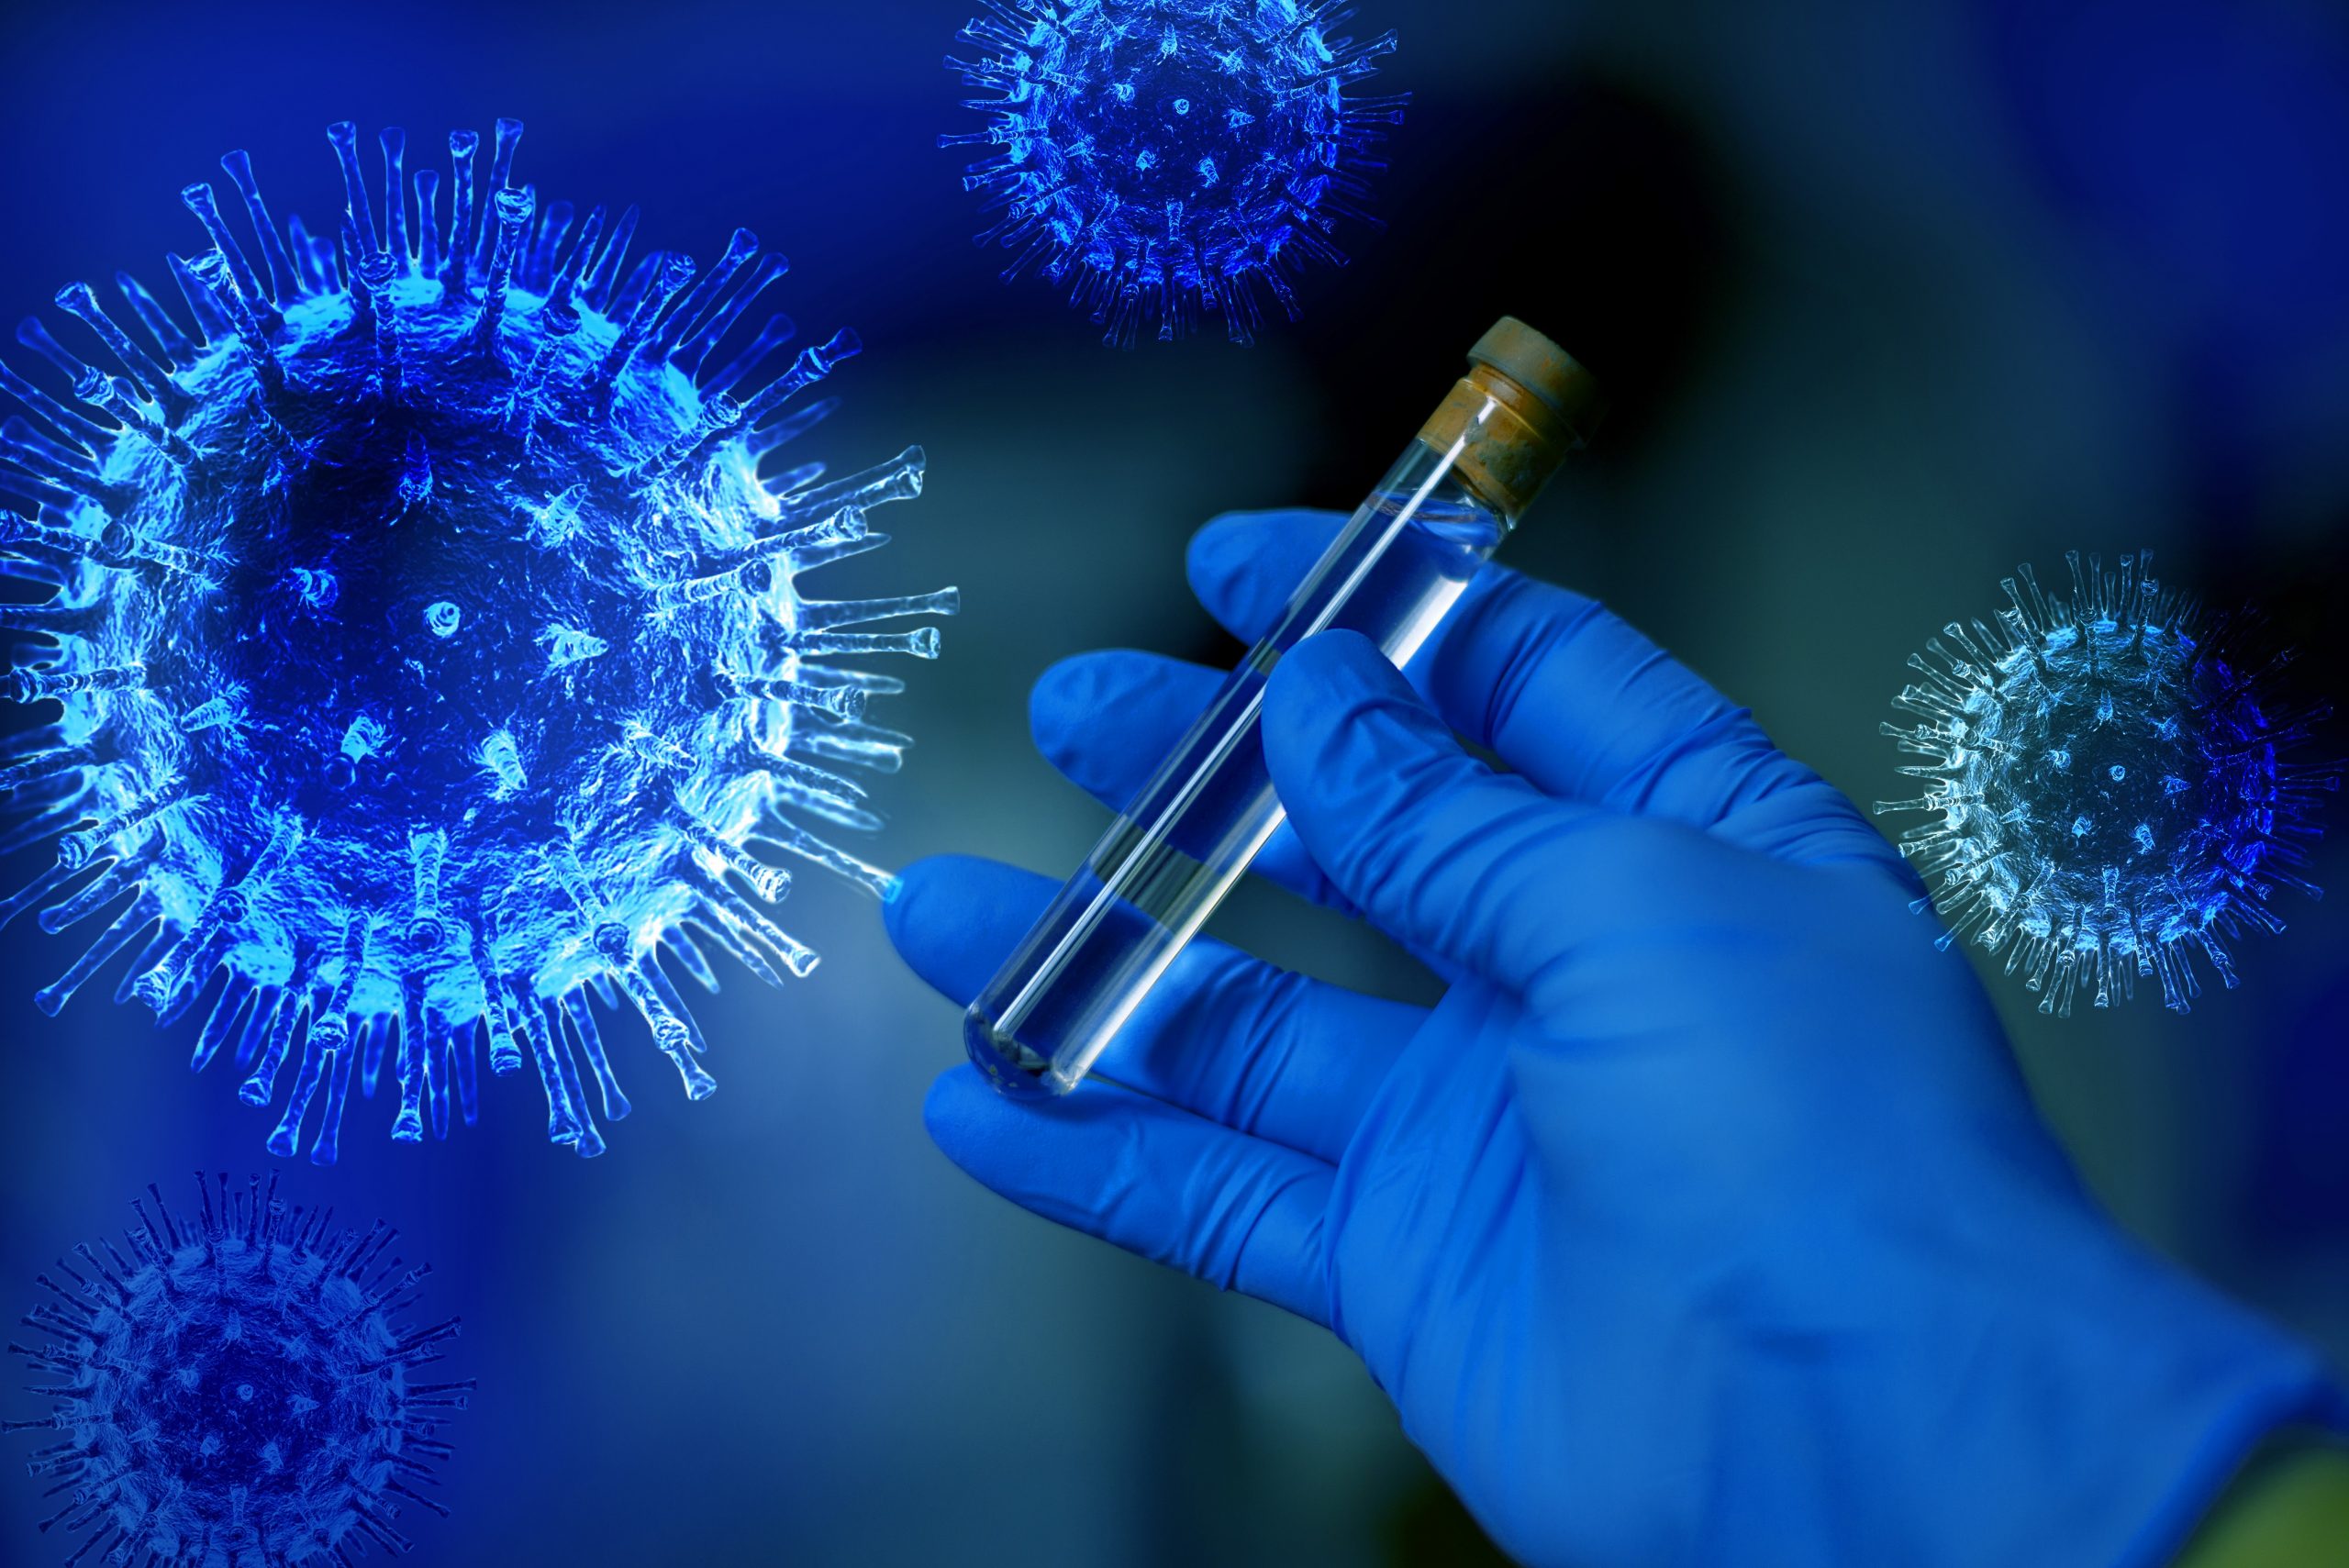 Қазақстанда ПТР-тестінің оң нәтижесі бар коронавирус бойынша 2021 жылғы 20 қыркүйектегі эпидемиологиялық жағдай туралы